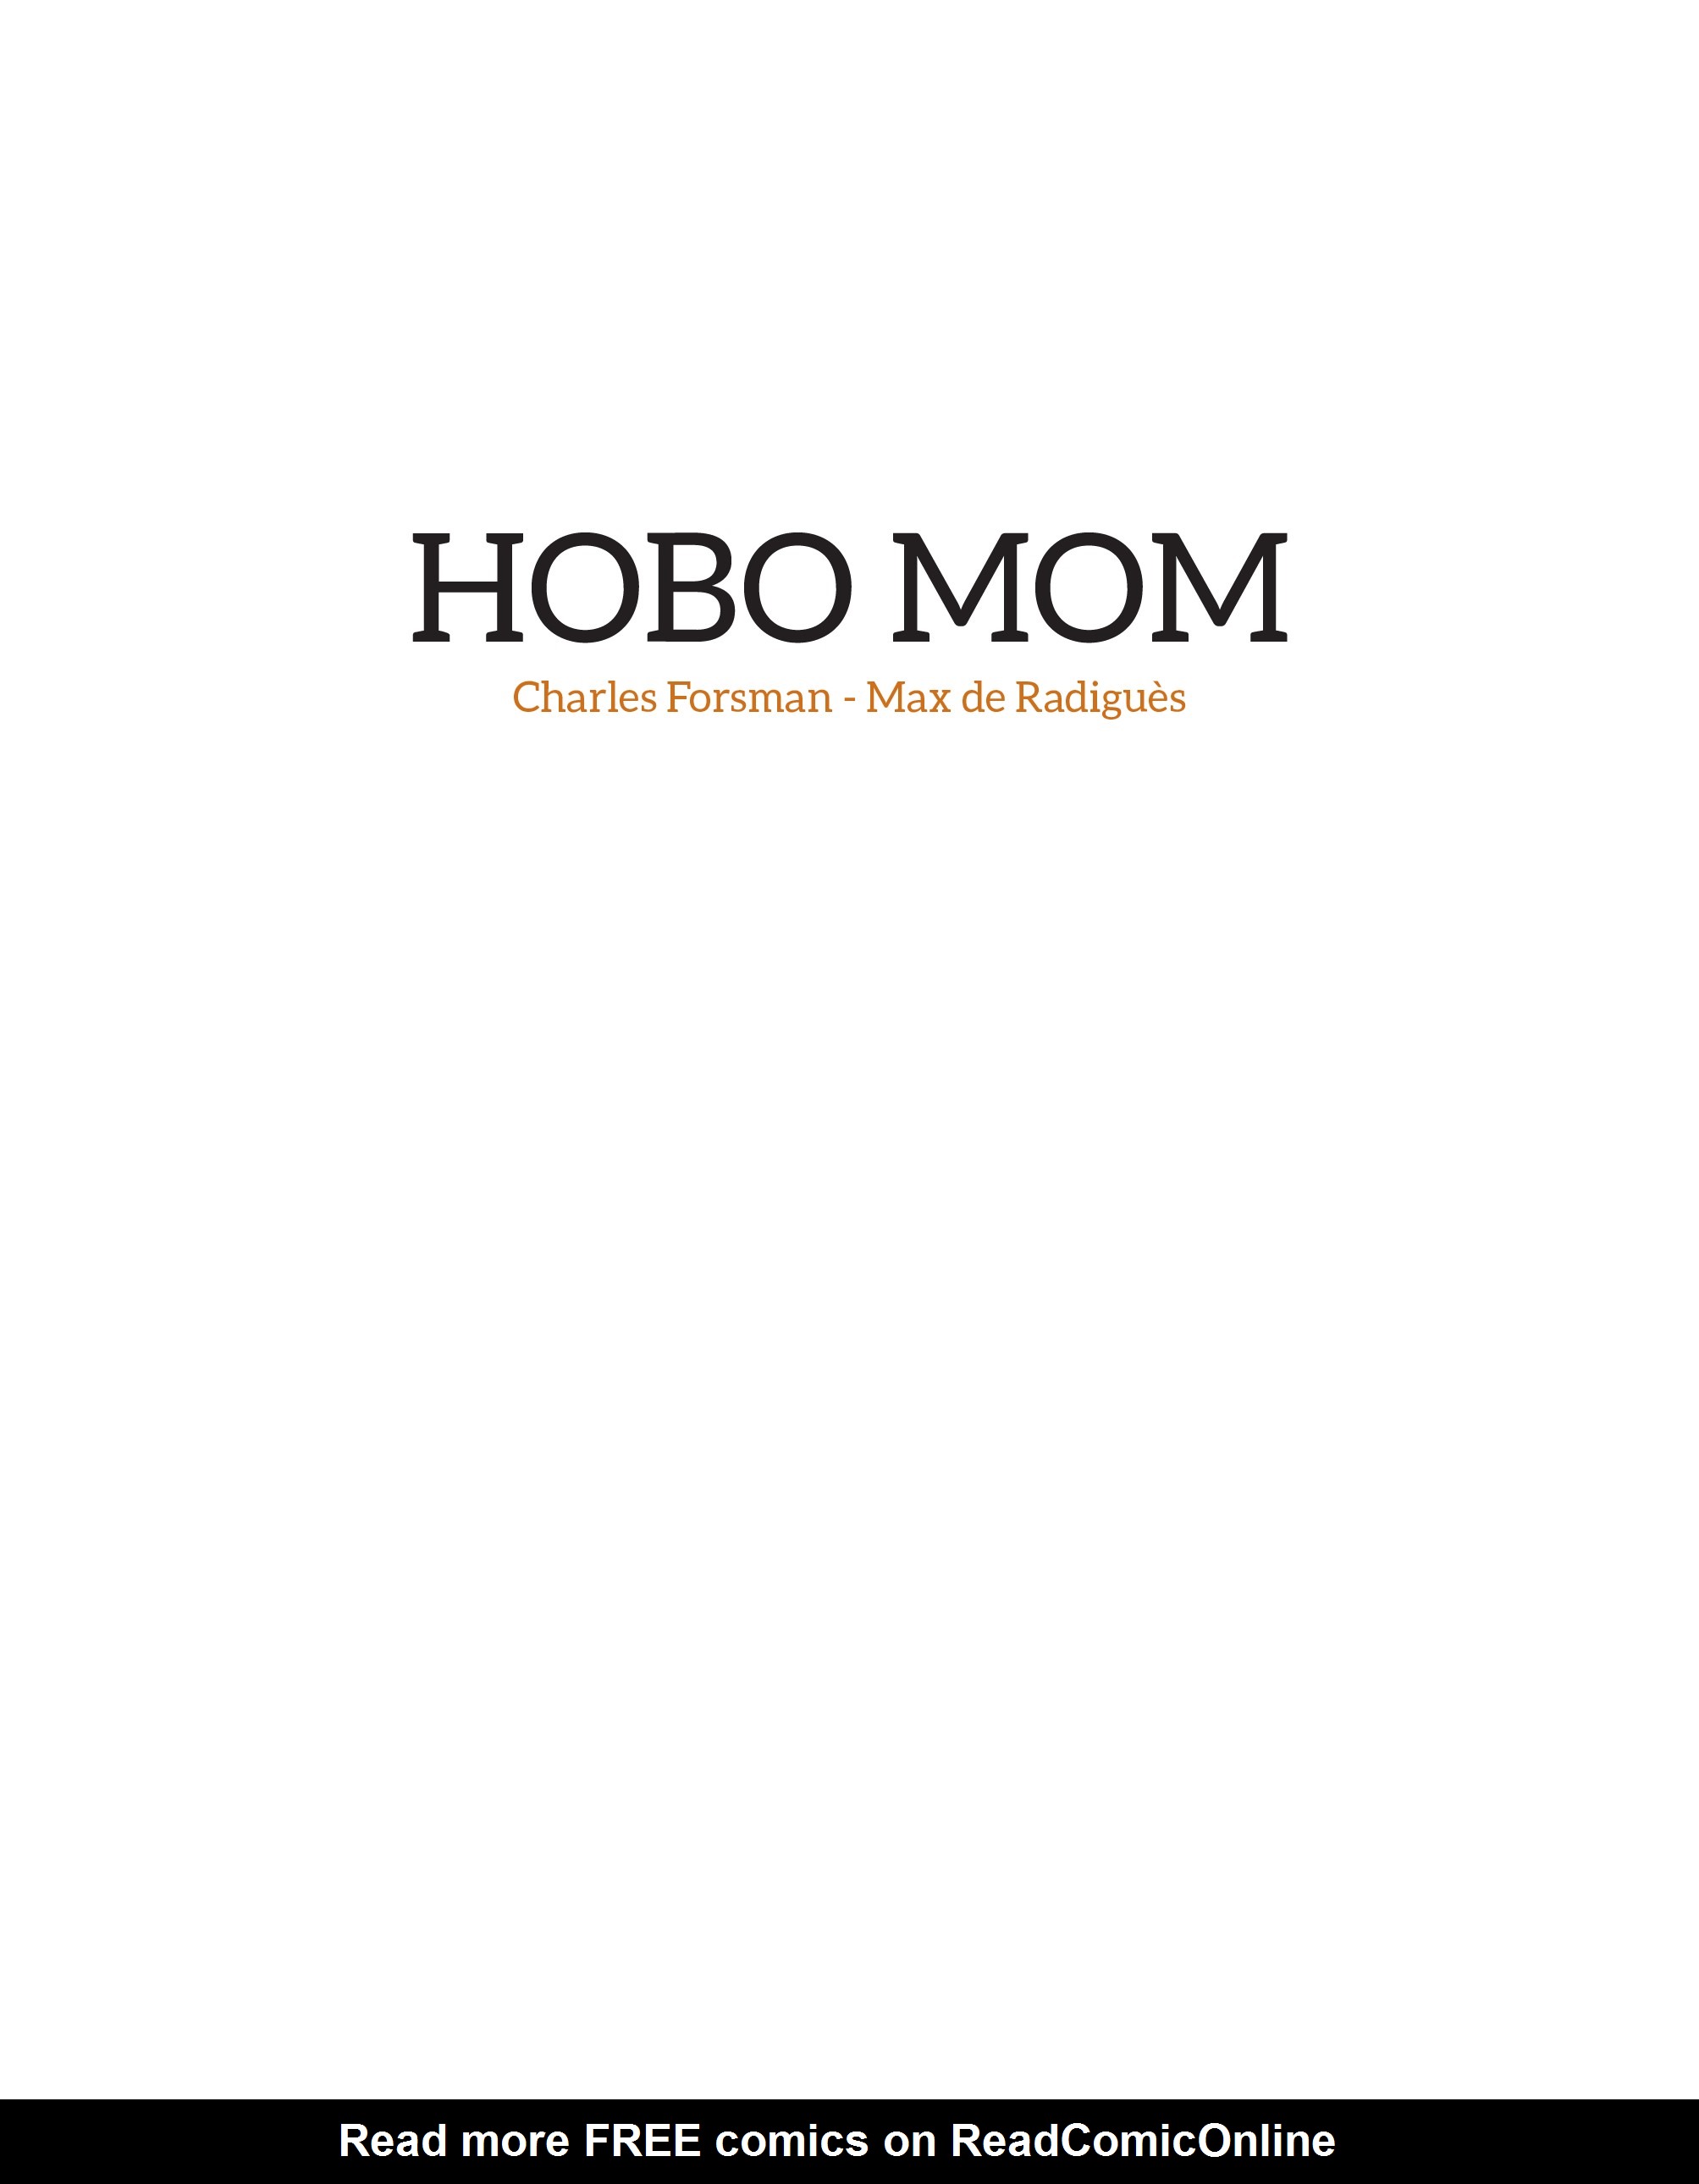 Read online Hobo Mom comic -  Issue # Full - 2